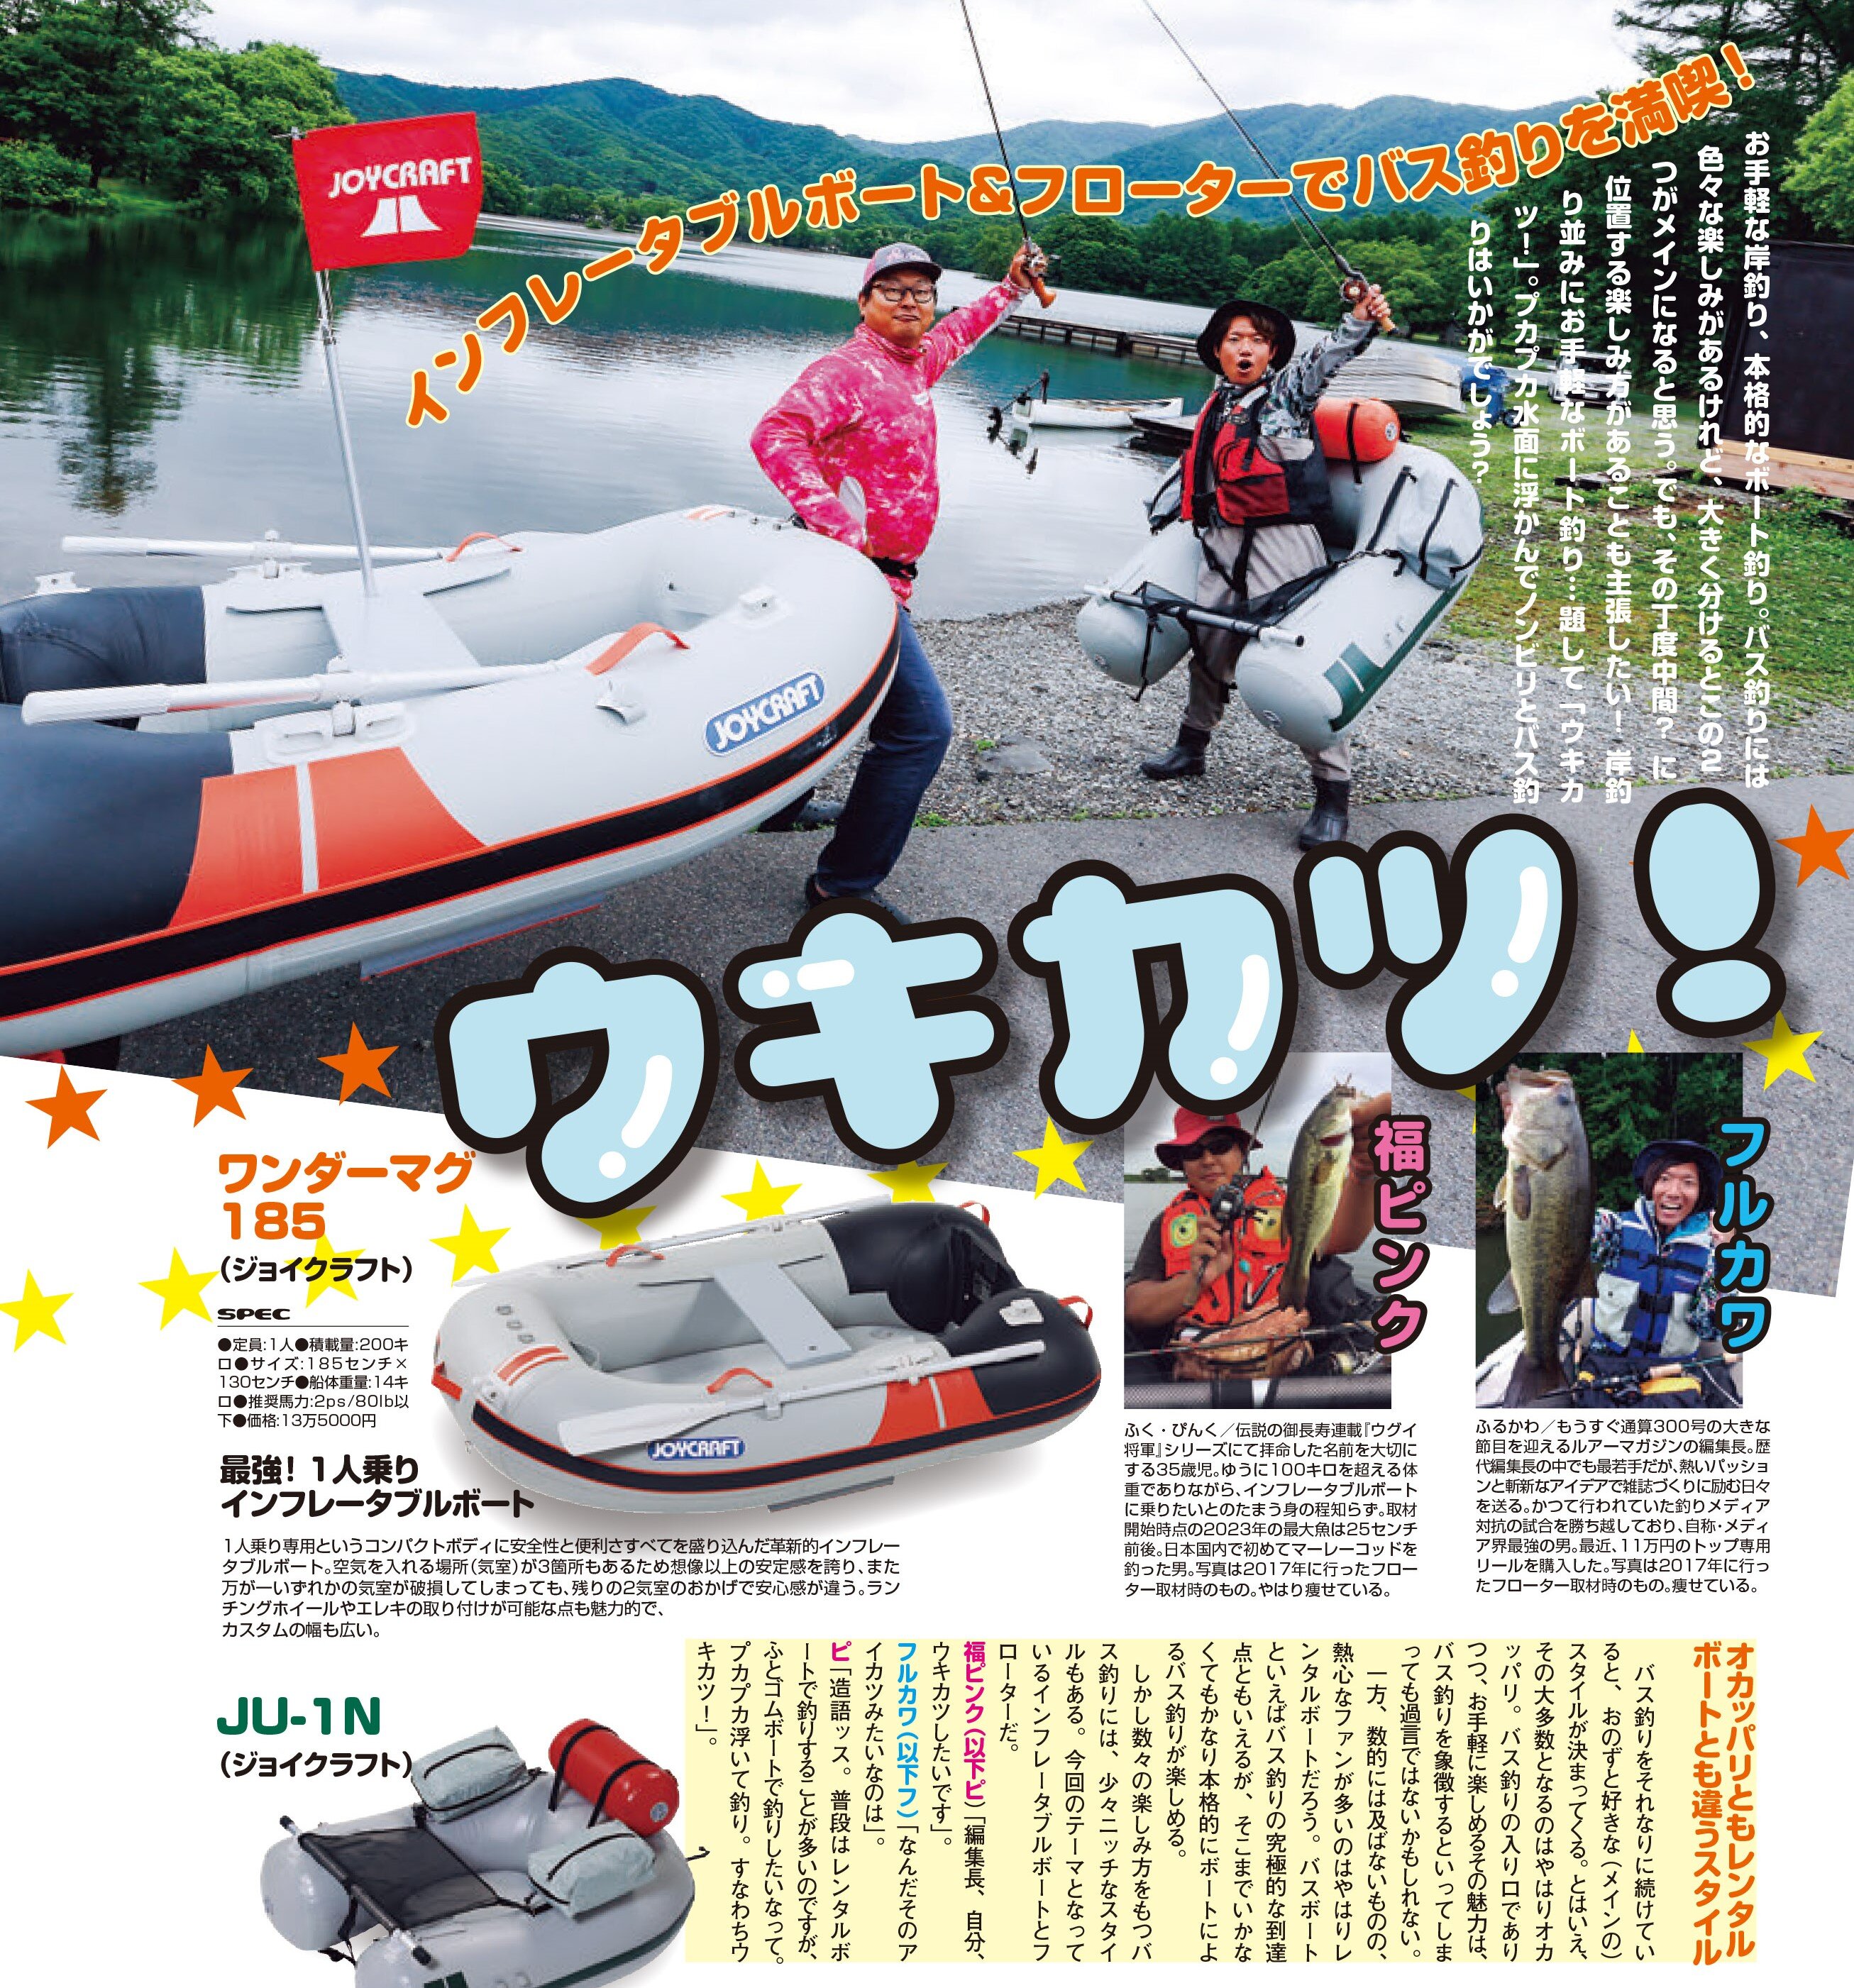 http://www.joycraft.co.jp/info/news/LM2309_boat_120-121_.jpg